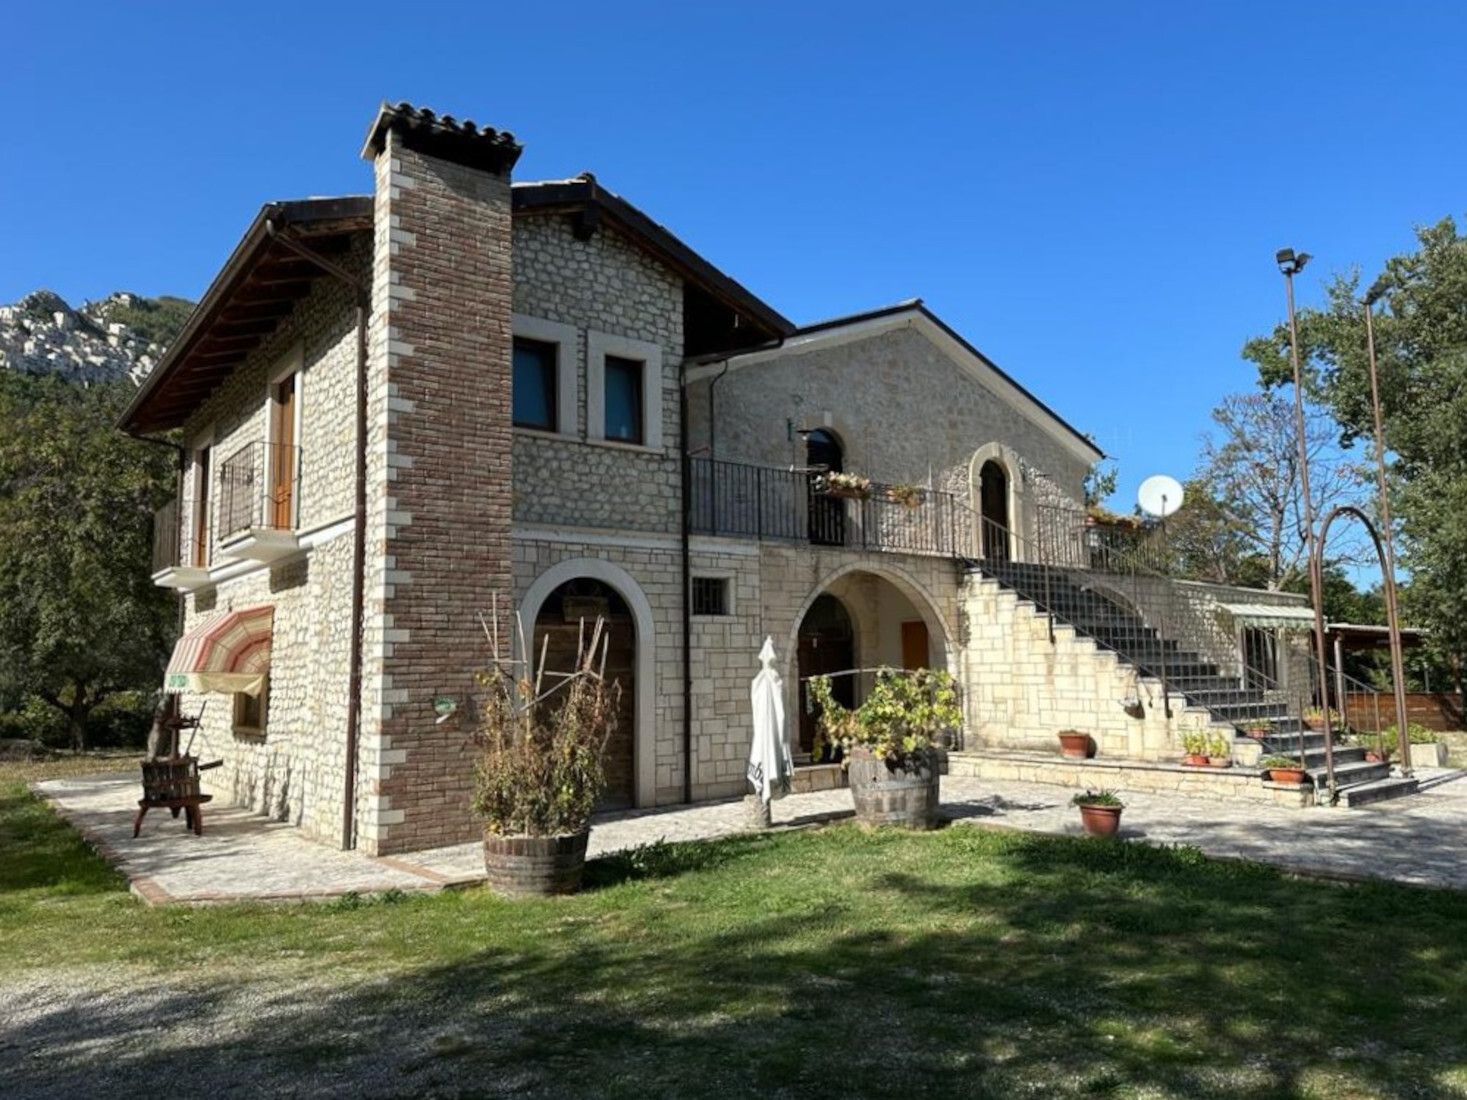 Affitto Immobili di Pregio a Pennapiedimonte, Abruzzo | luxforsale.it